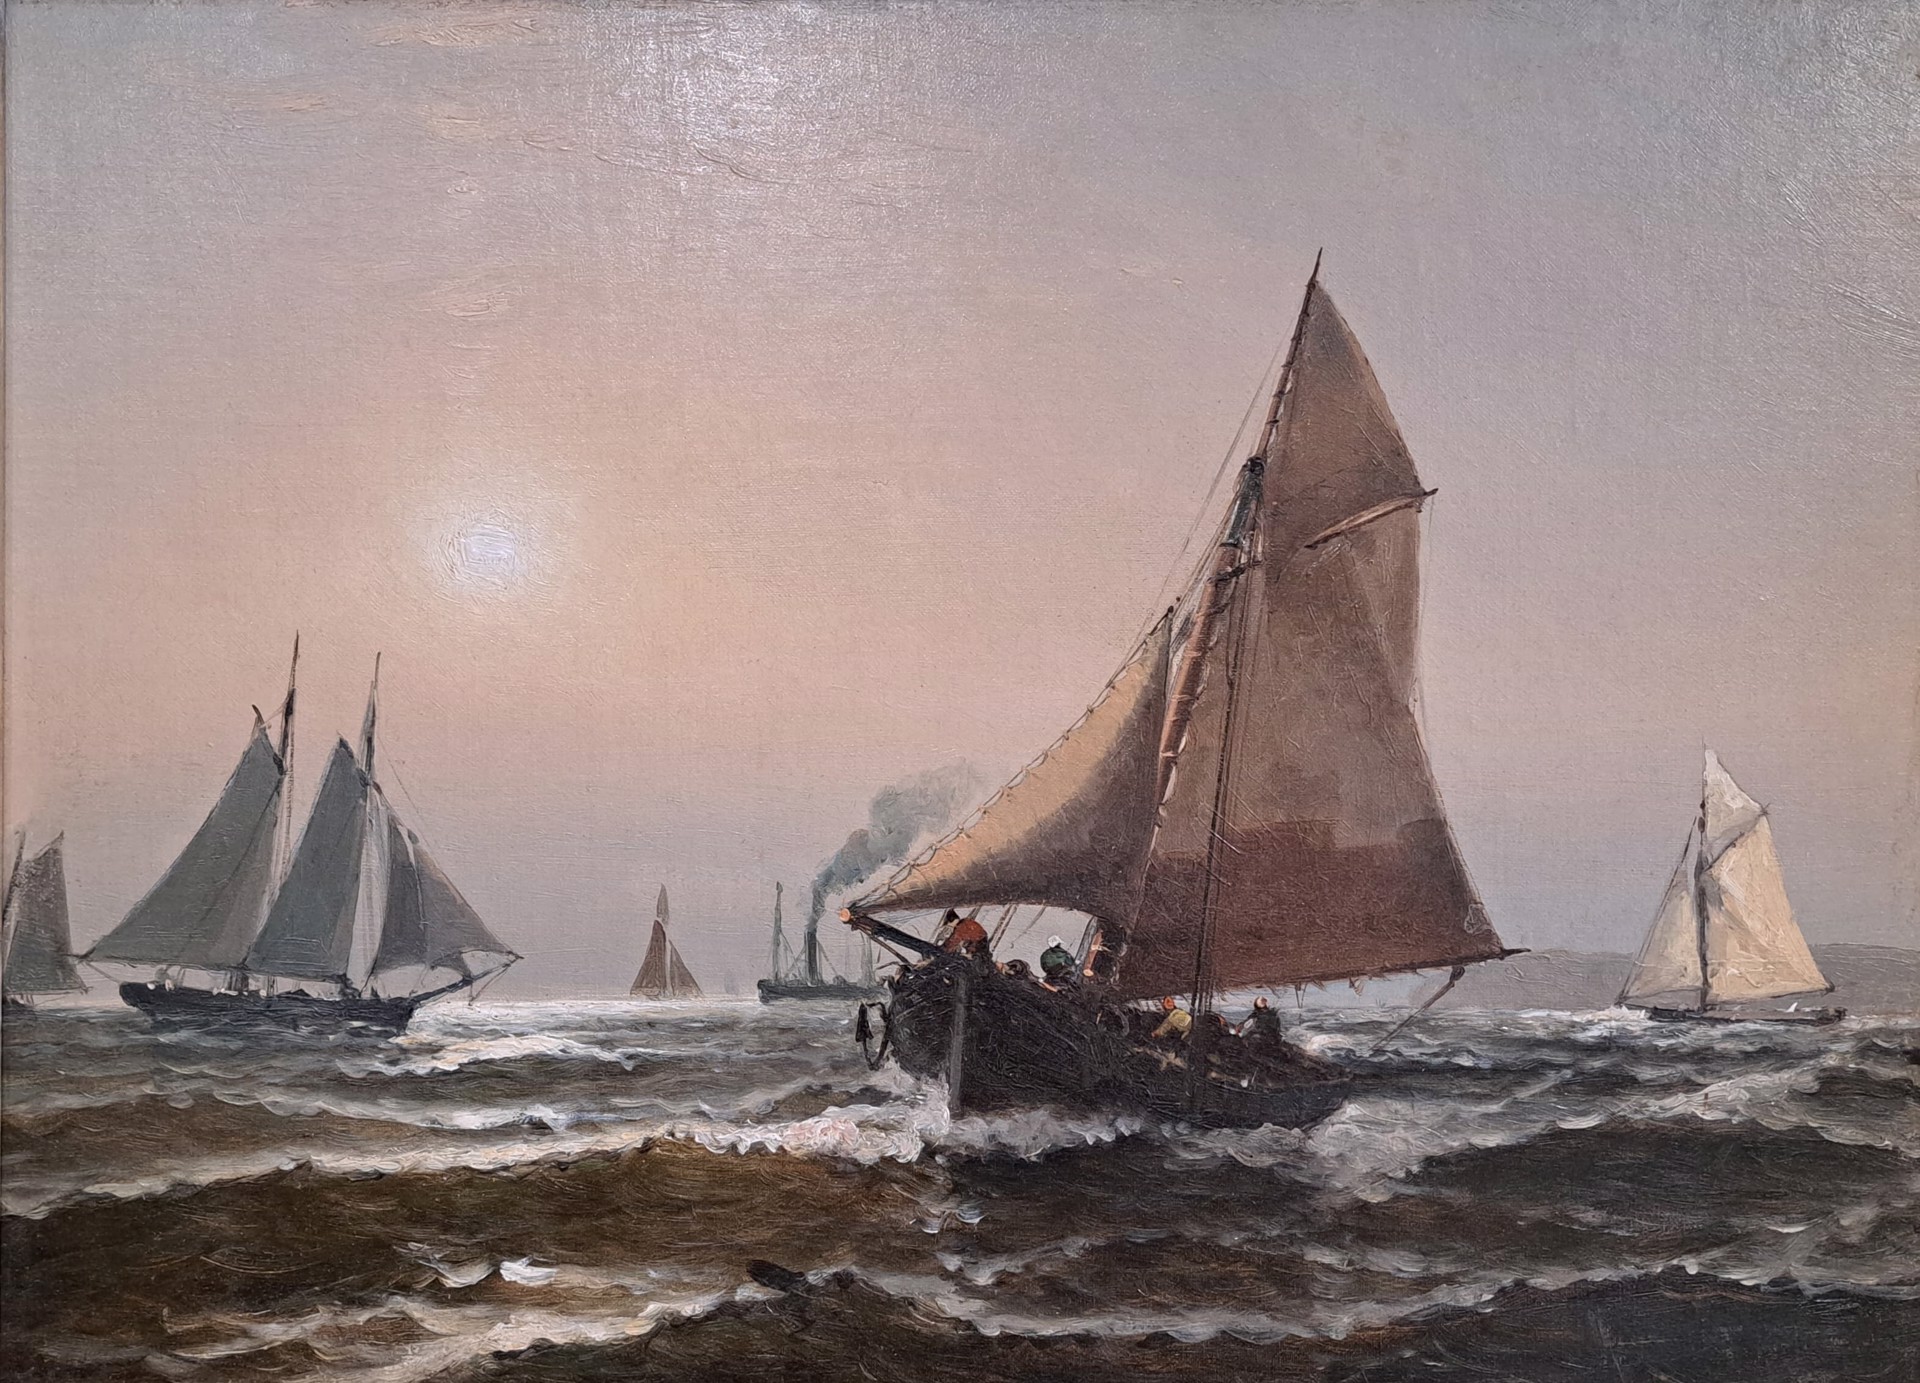 NY Harbor Pilot Schooners by Edward Moran (1829-1901)